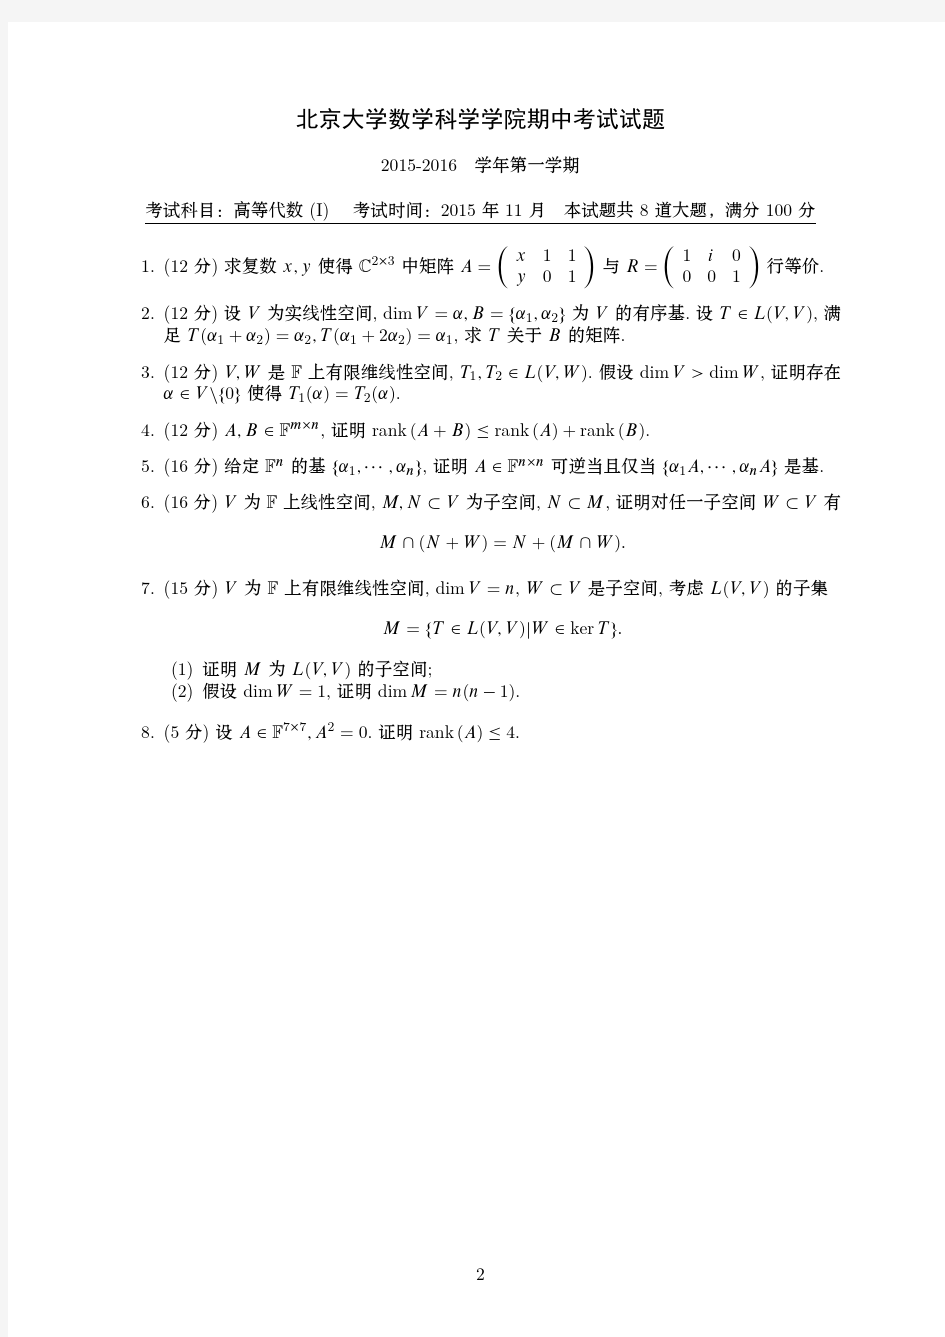 北京大学数学科学学院2015年上学期期中考试试题